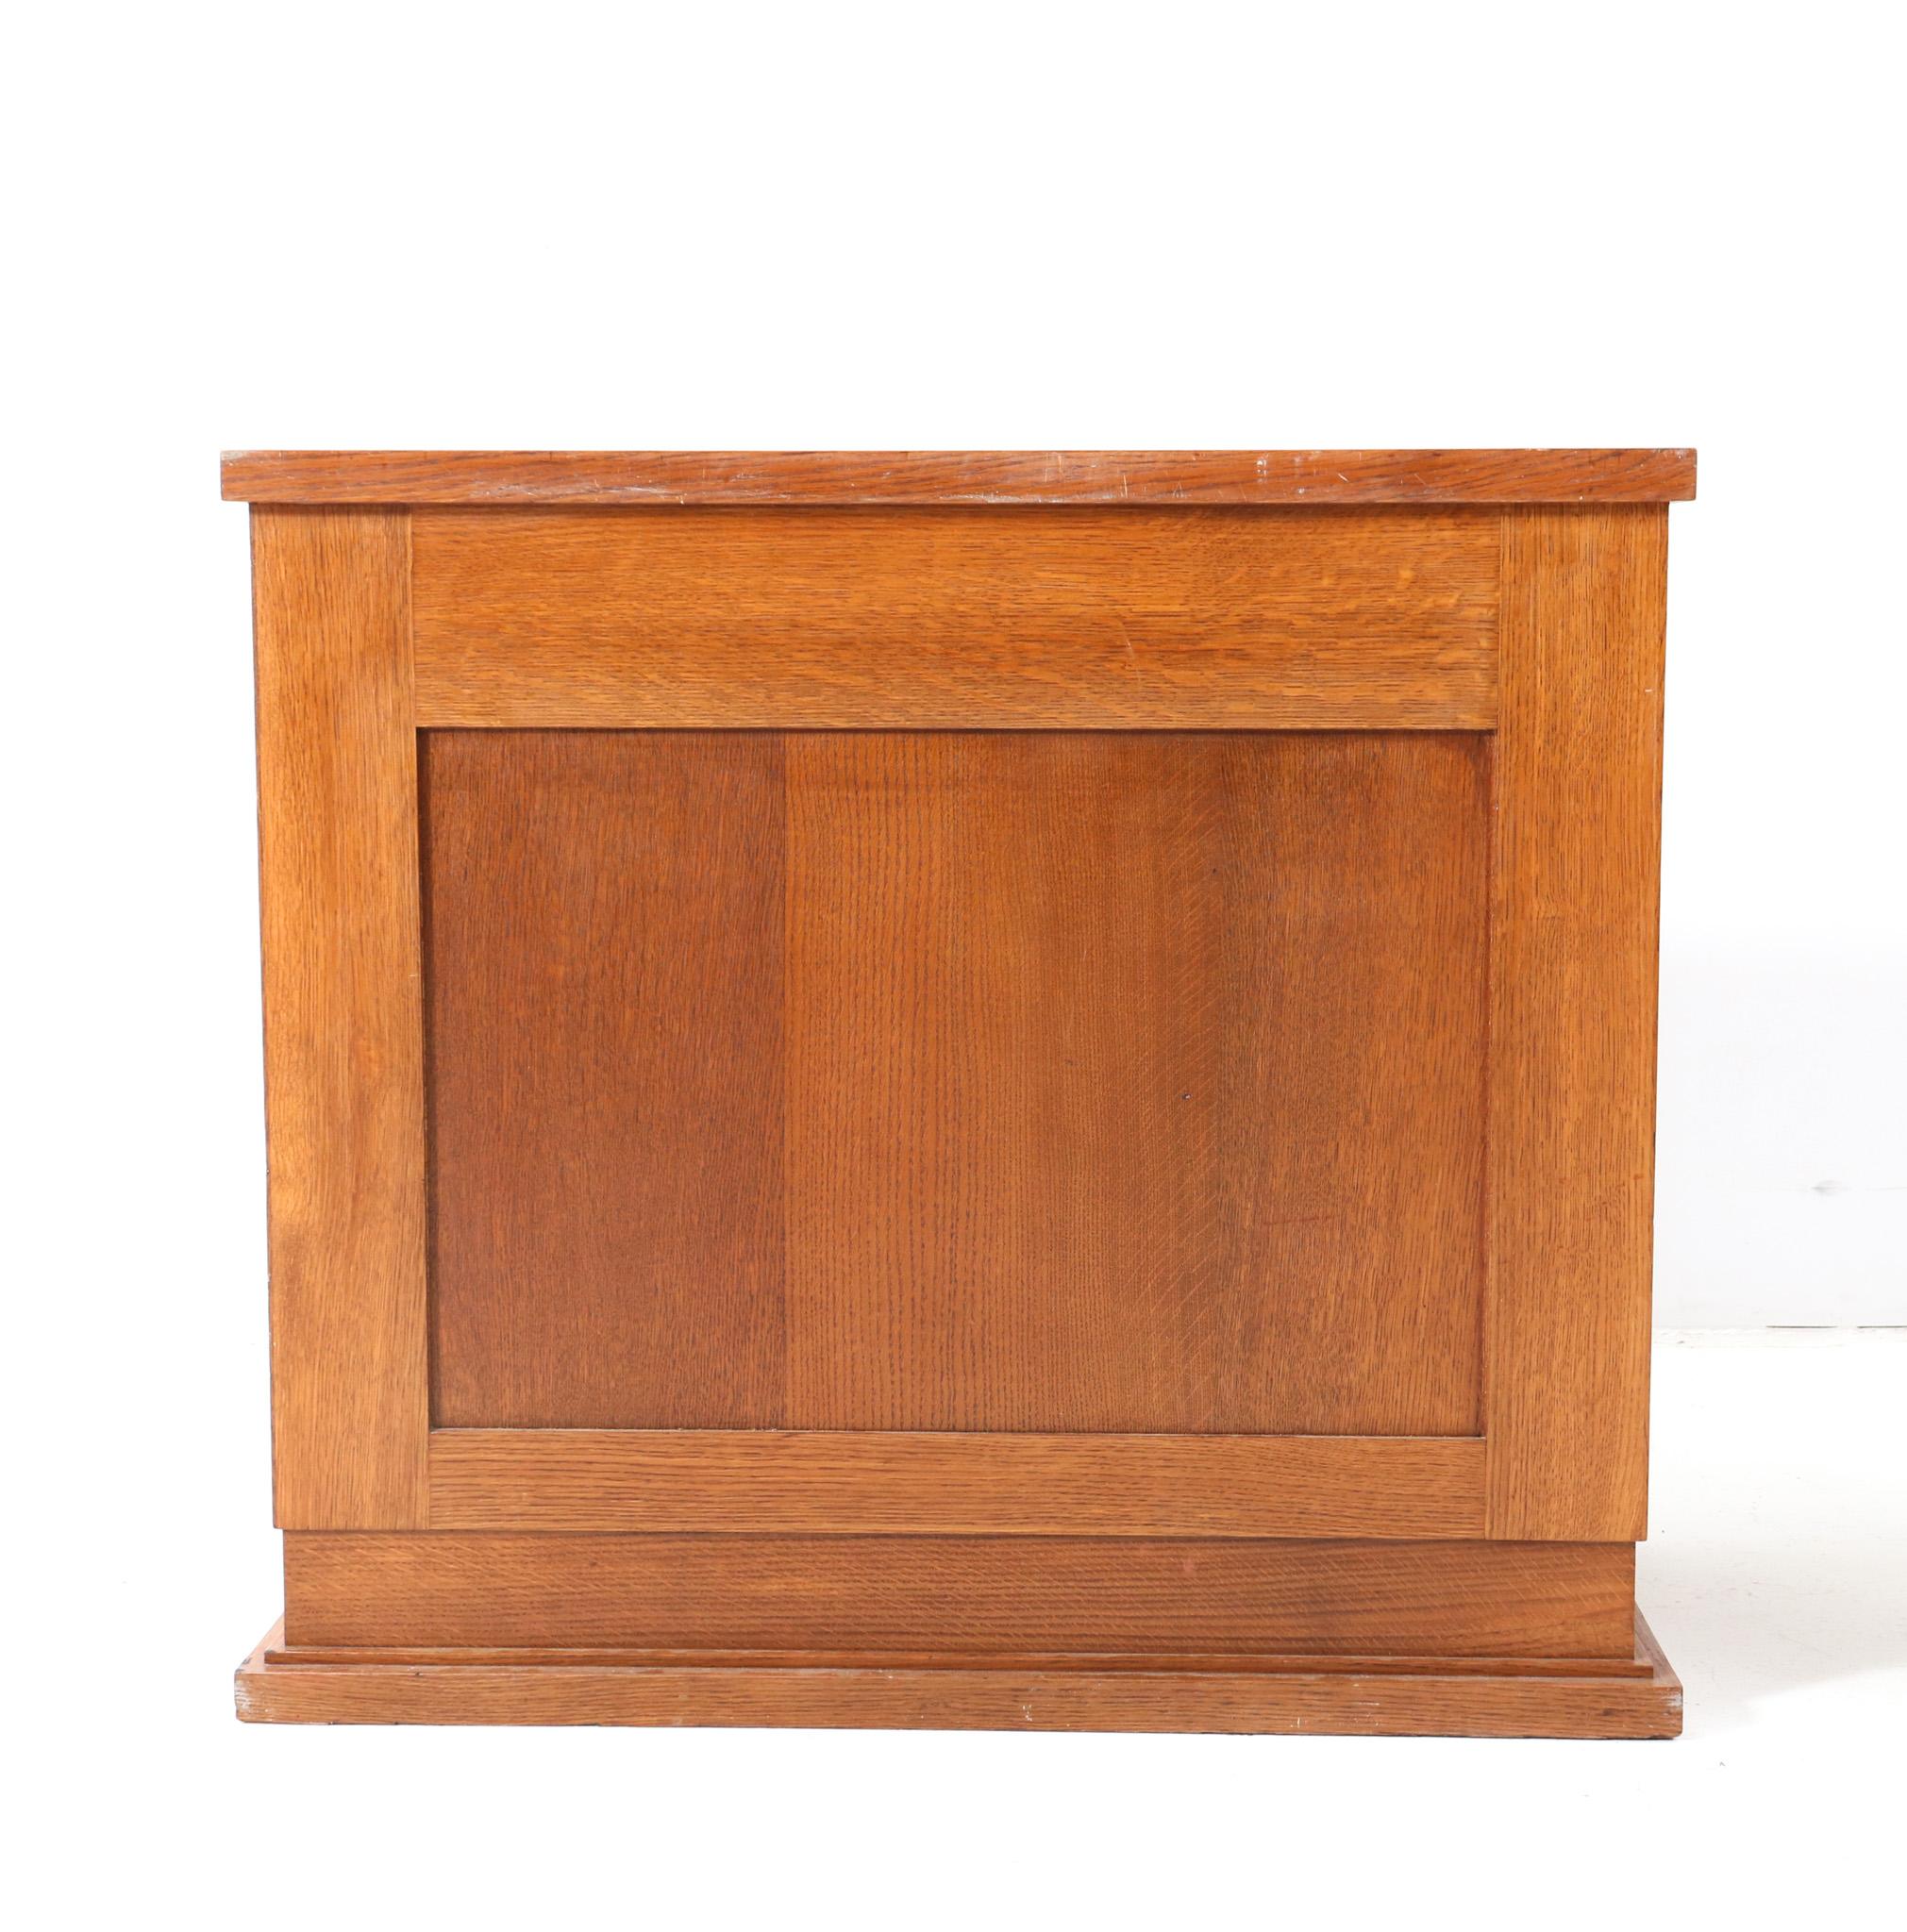 Oak Art Deco Modernist Cabinet by Hendrik Wouda for H. Pander & Zonen, 1924 For Sale 3